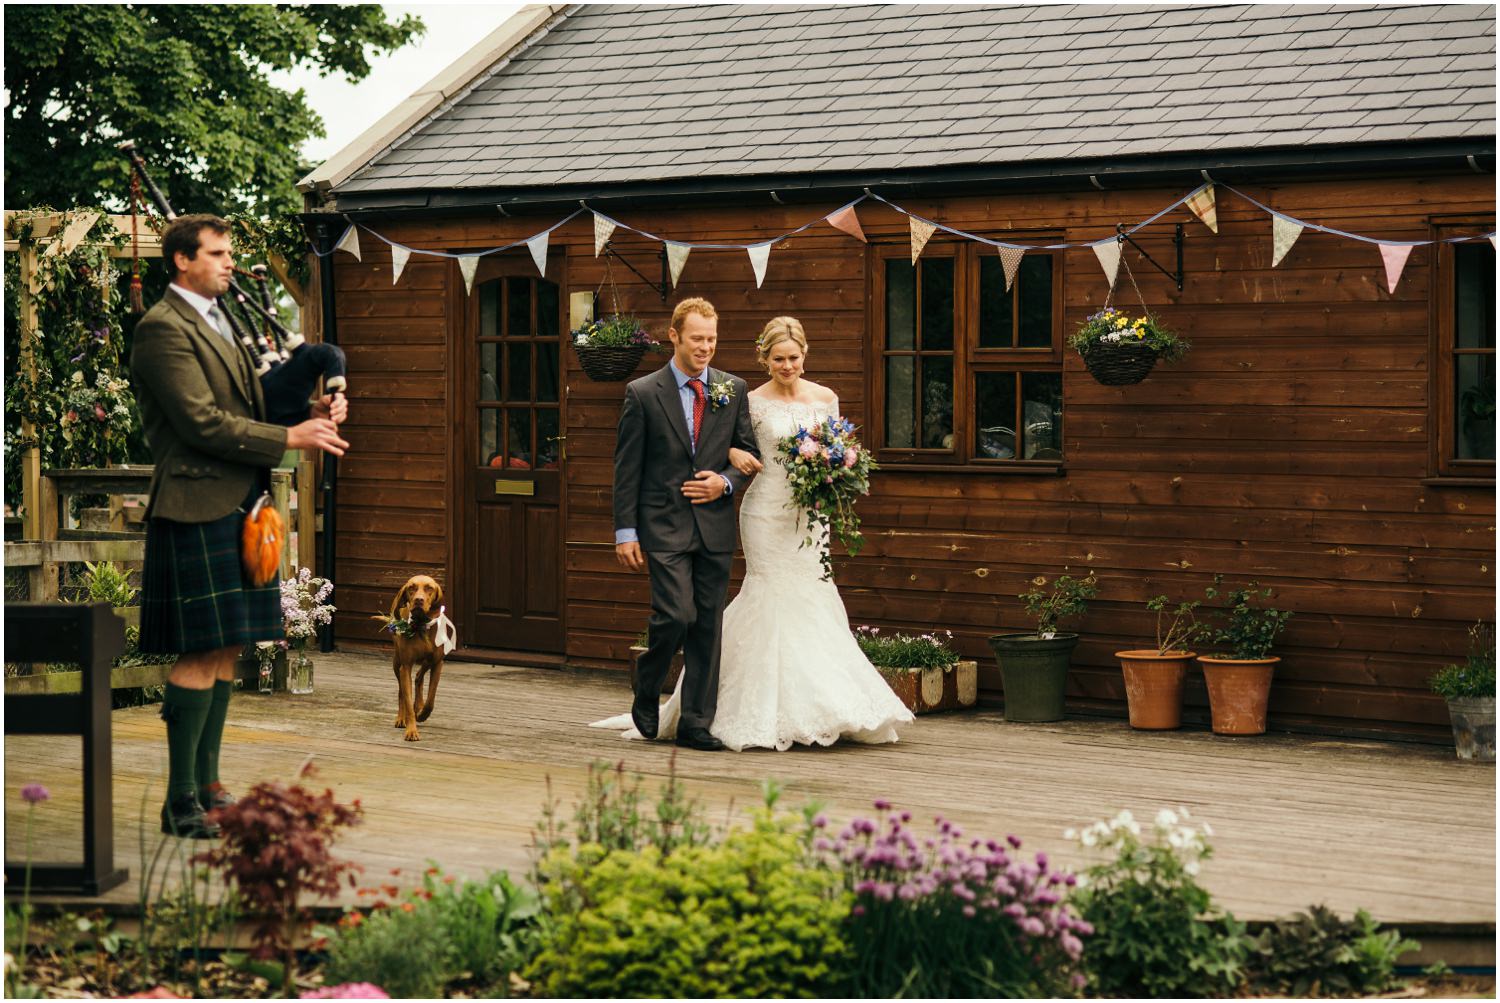 Dog friendly wedding venues in Scotland